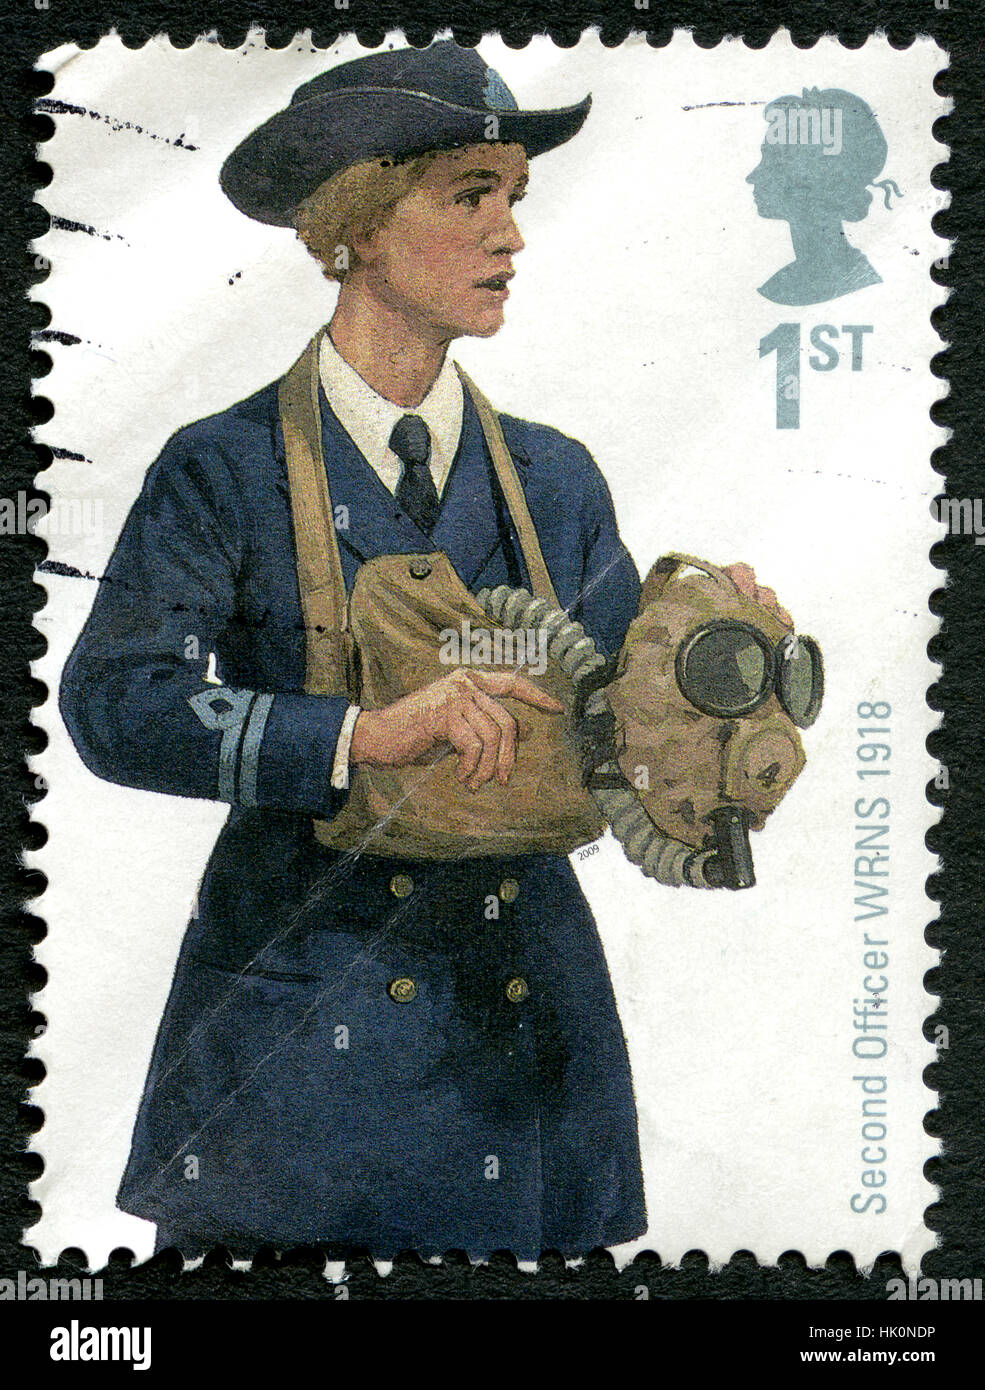 Großbritannien - CIRCA 2009: Eine gebrauchte Briefmarke aus dem Vereinigten Königreich, Darstellung einer Illustration eines zweiten Offiziers - Mitglied der Womens Royal Naval Servi Stockfoto